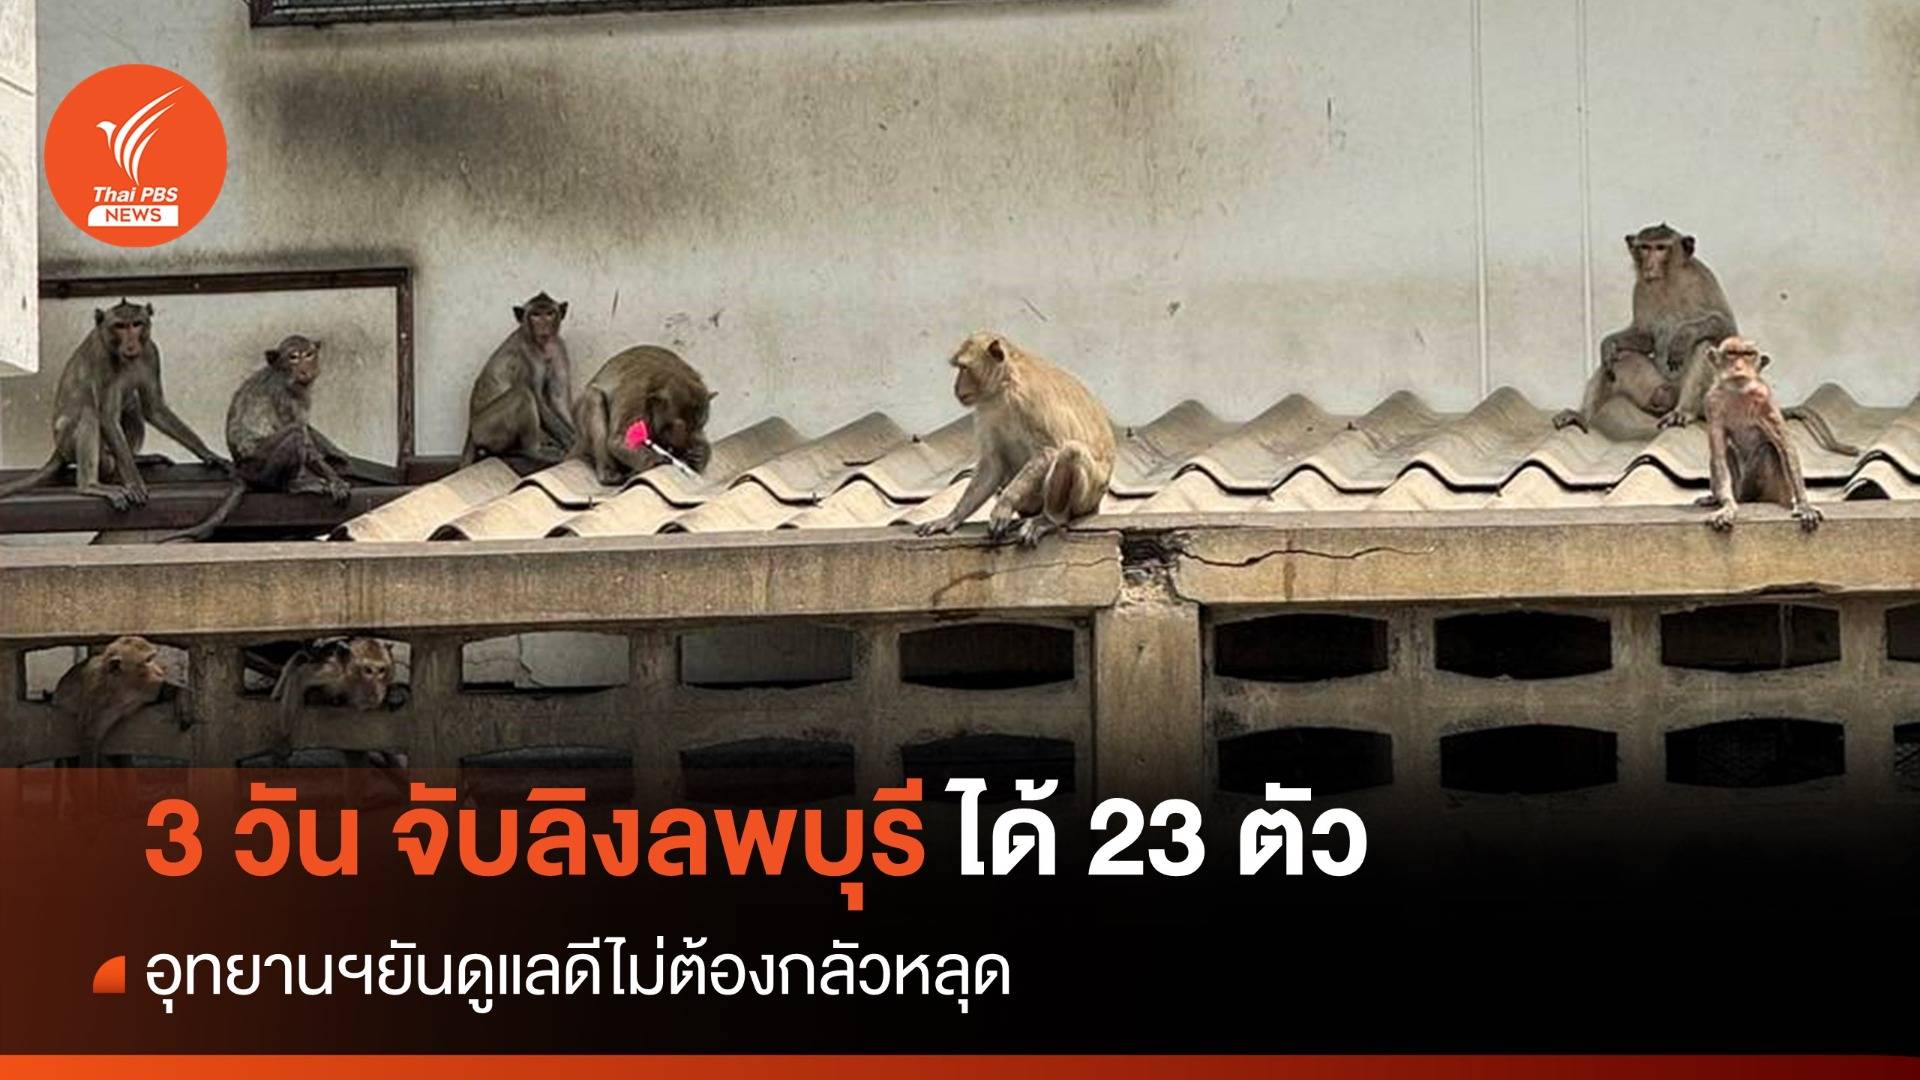 3 วัน จับลิงลพบุรีได้ 23 ตัว อุทยานฯยันดูแลดีไม่ต้องกลัวหลุด 